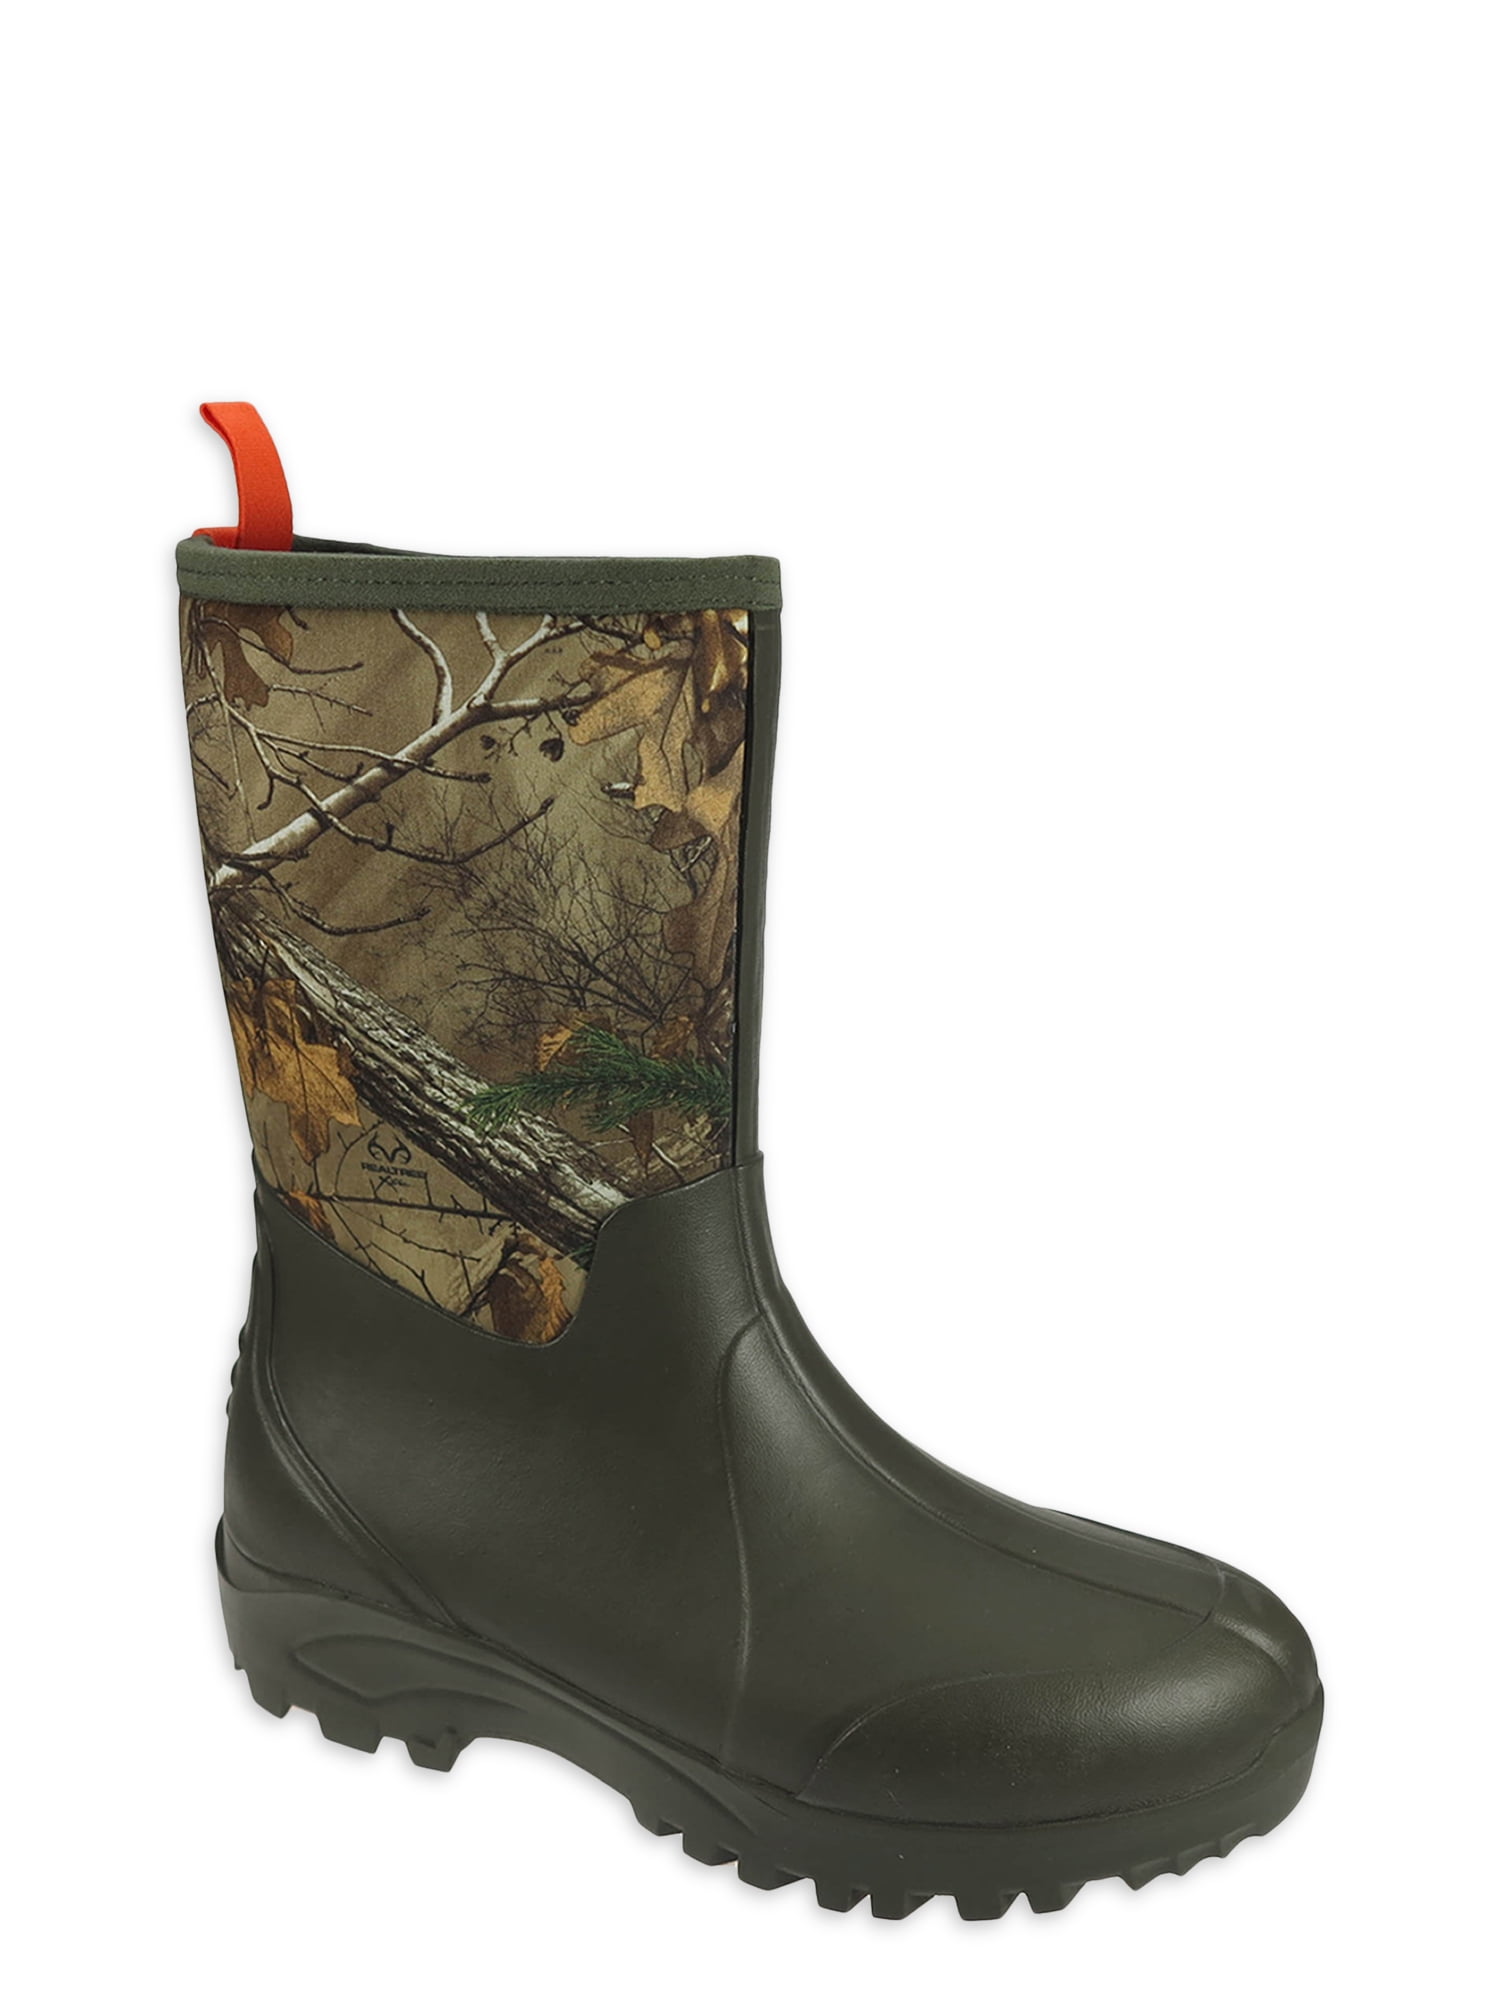 Ozark Trail Rubber Boots Sale Online | bellvalefarms.com